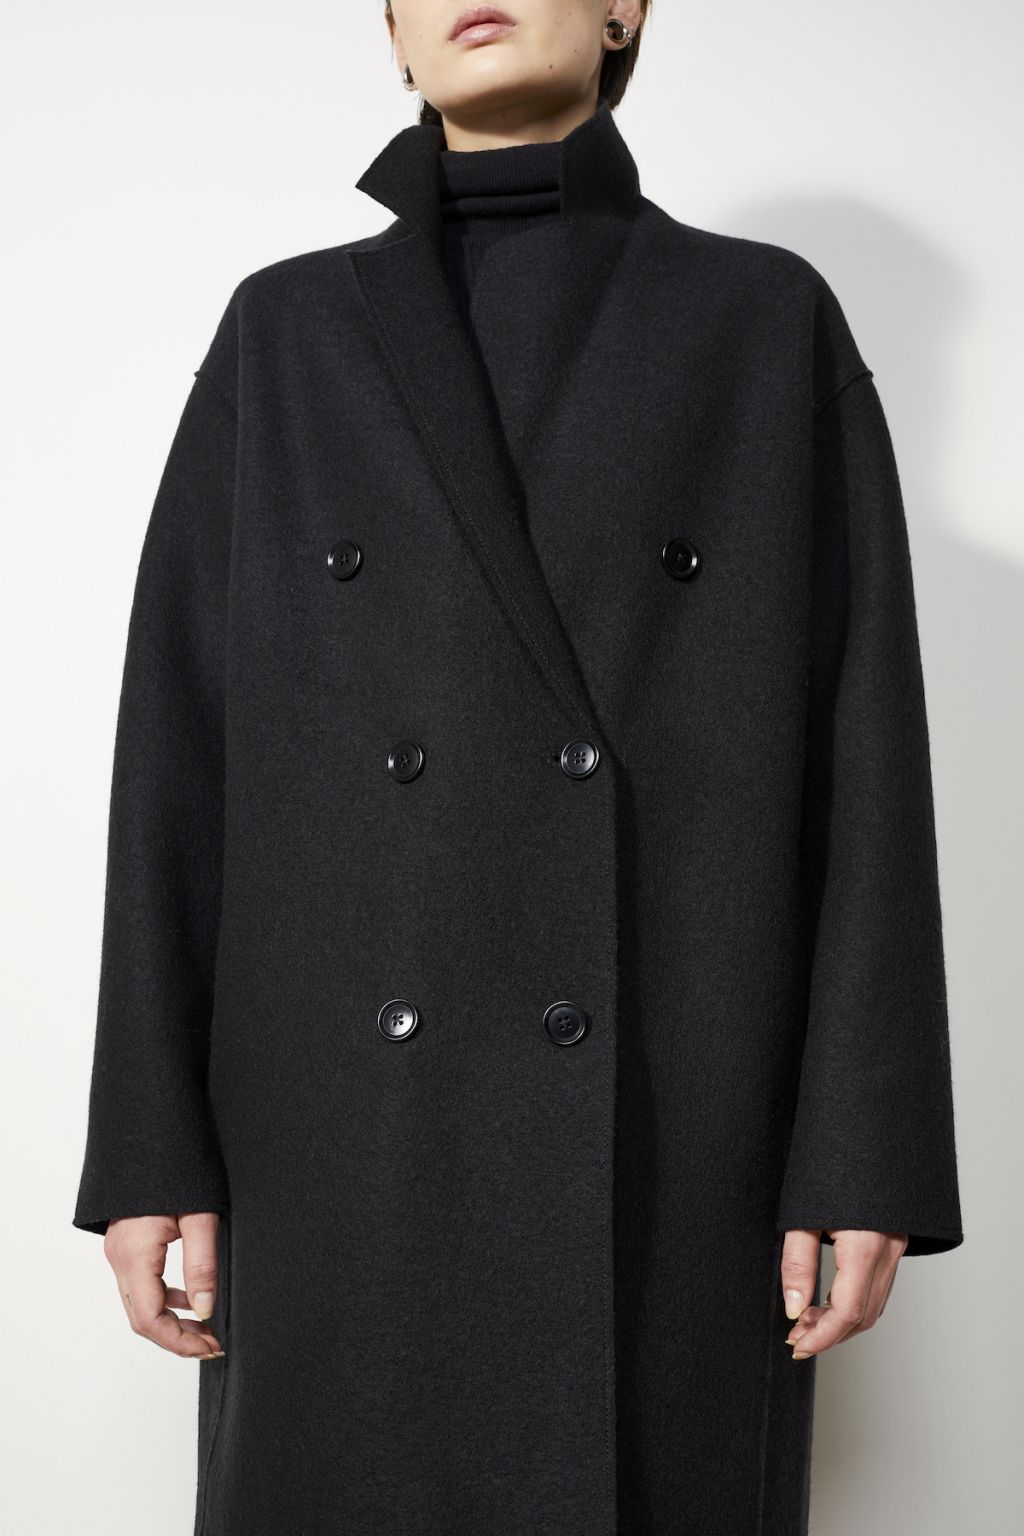 Coat Nicollet Black M